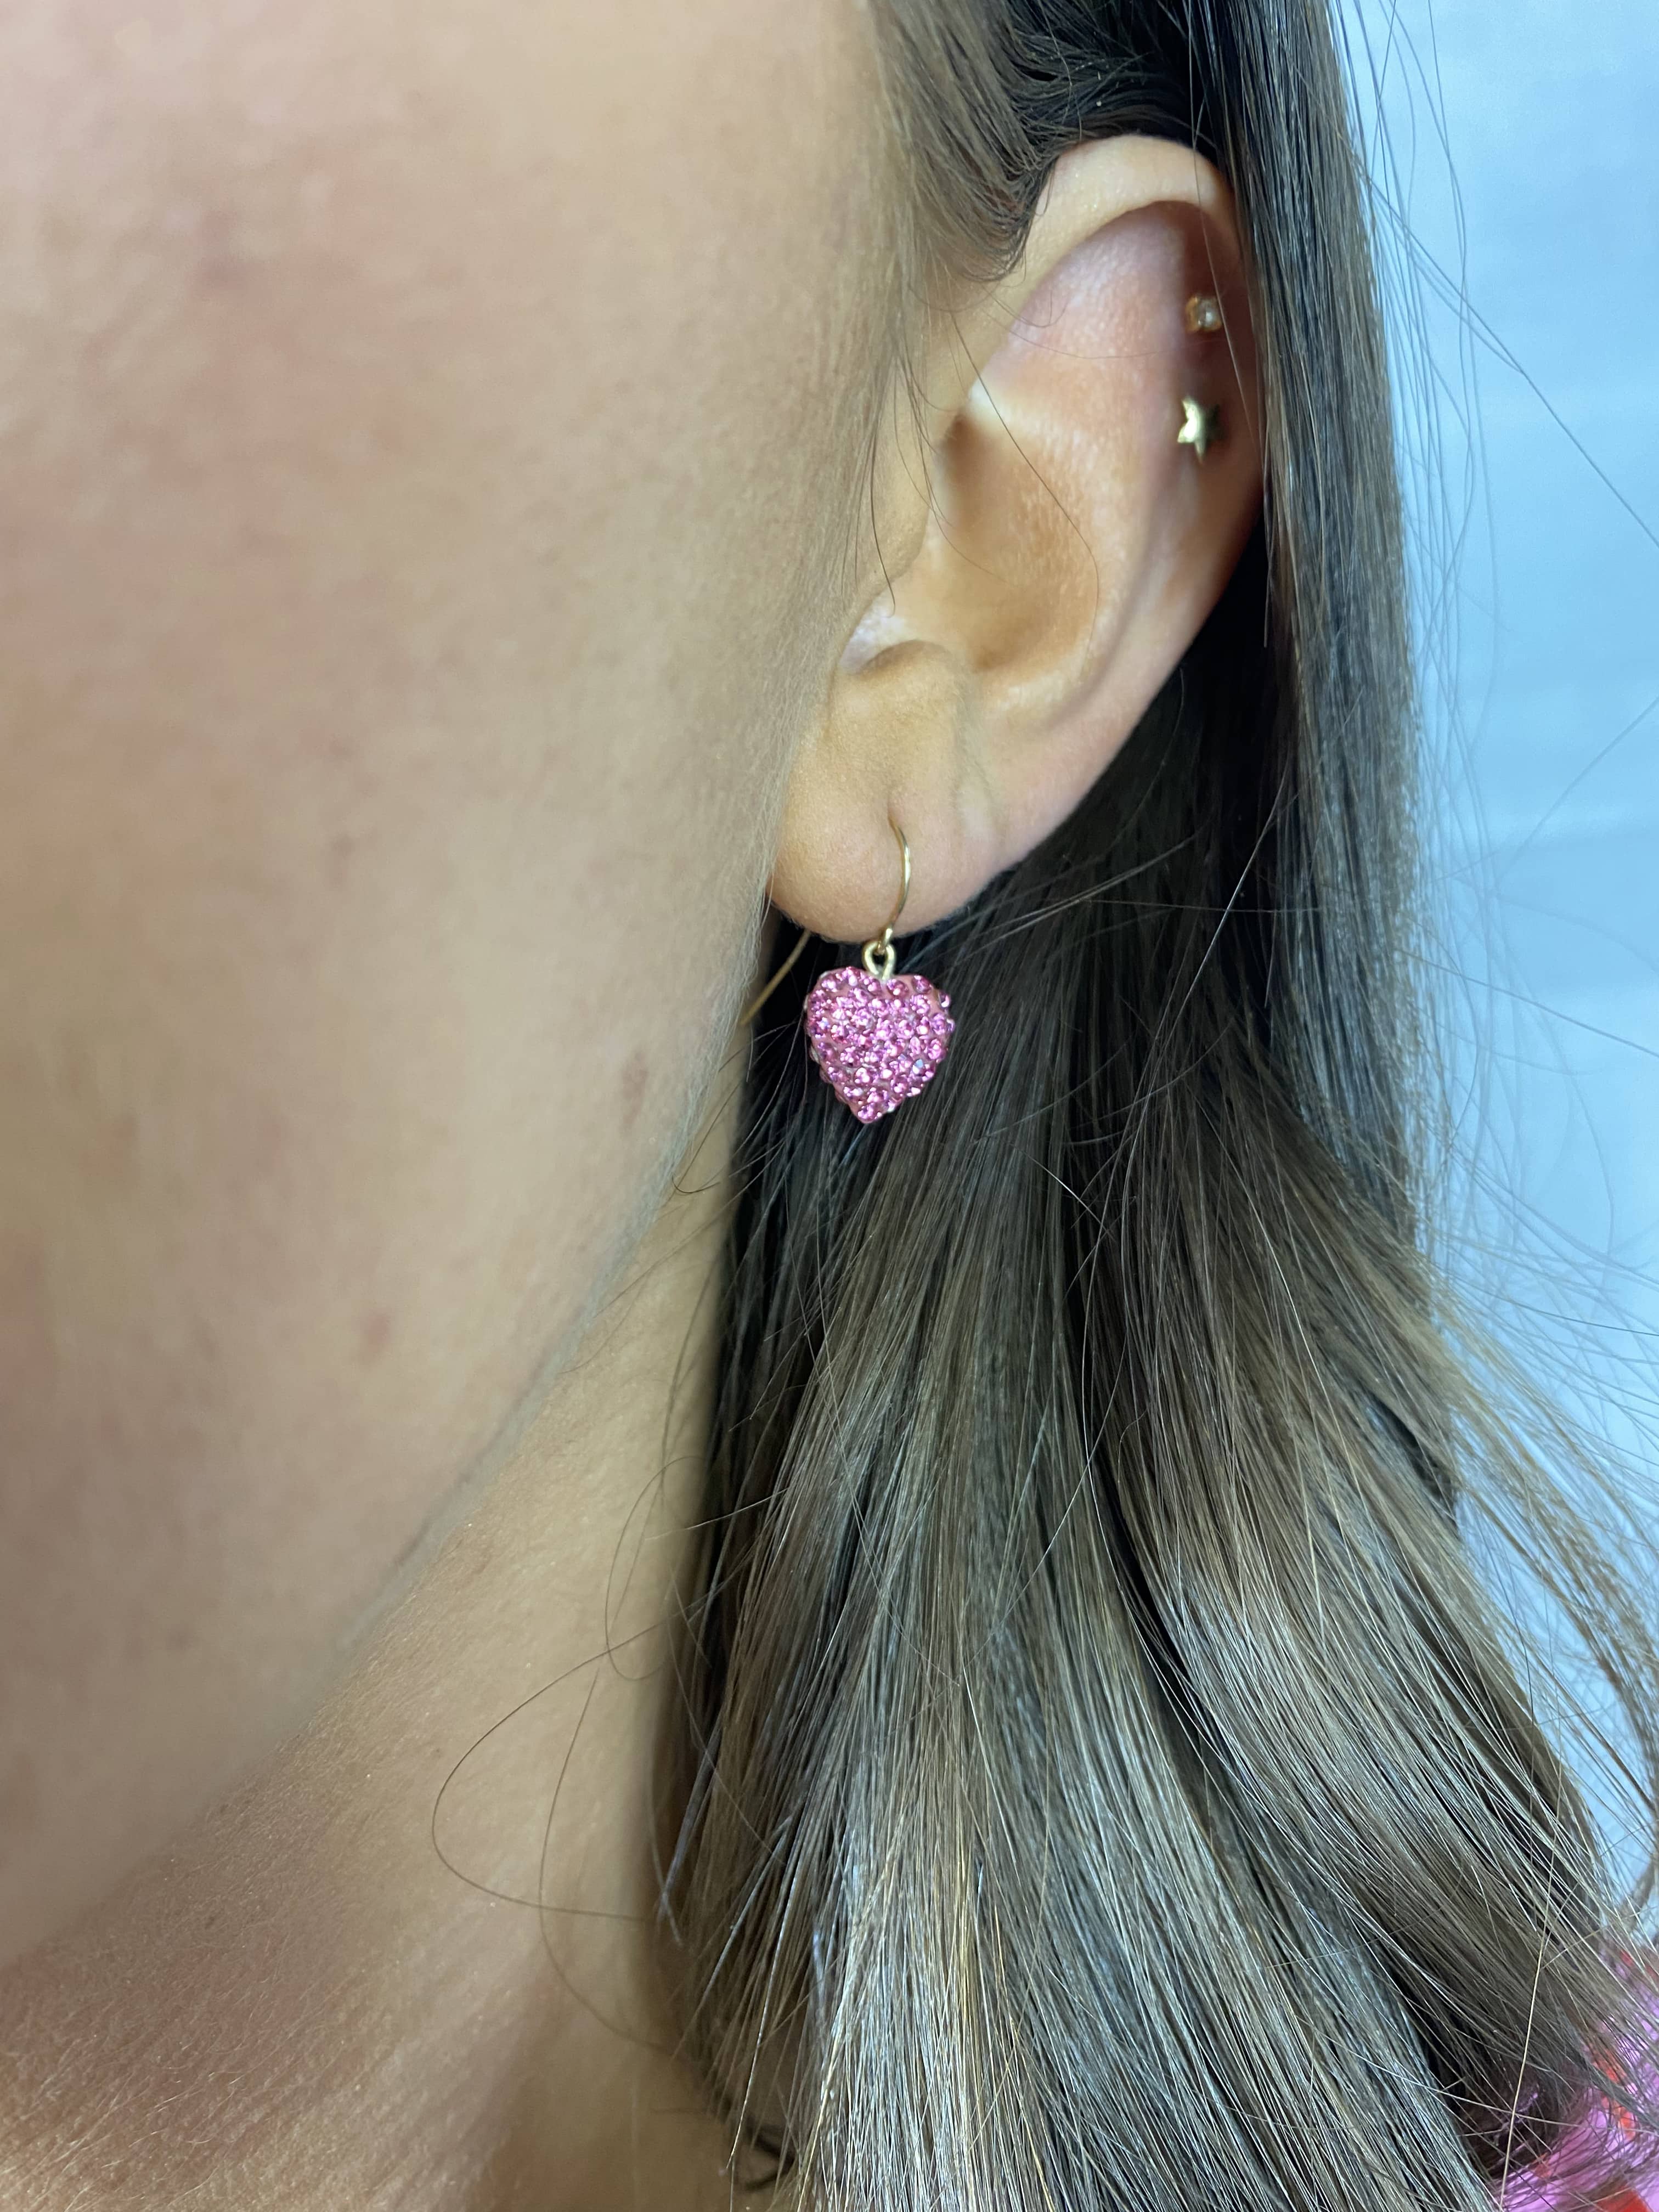 9ct Gold Pink Love Heart Drop Earrings